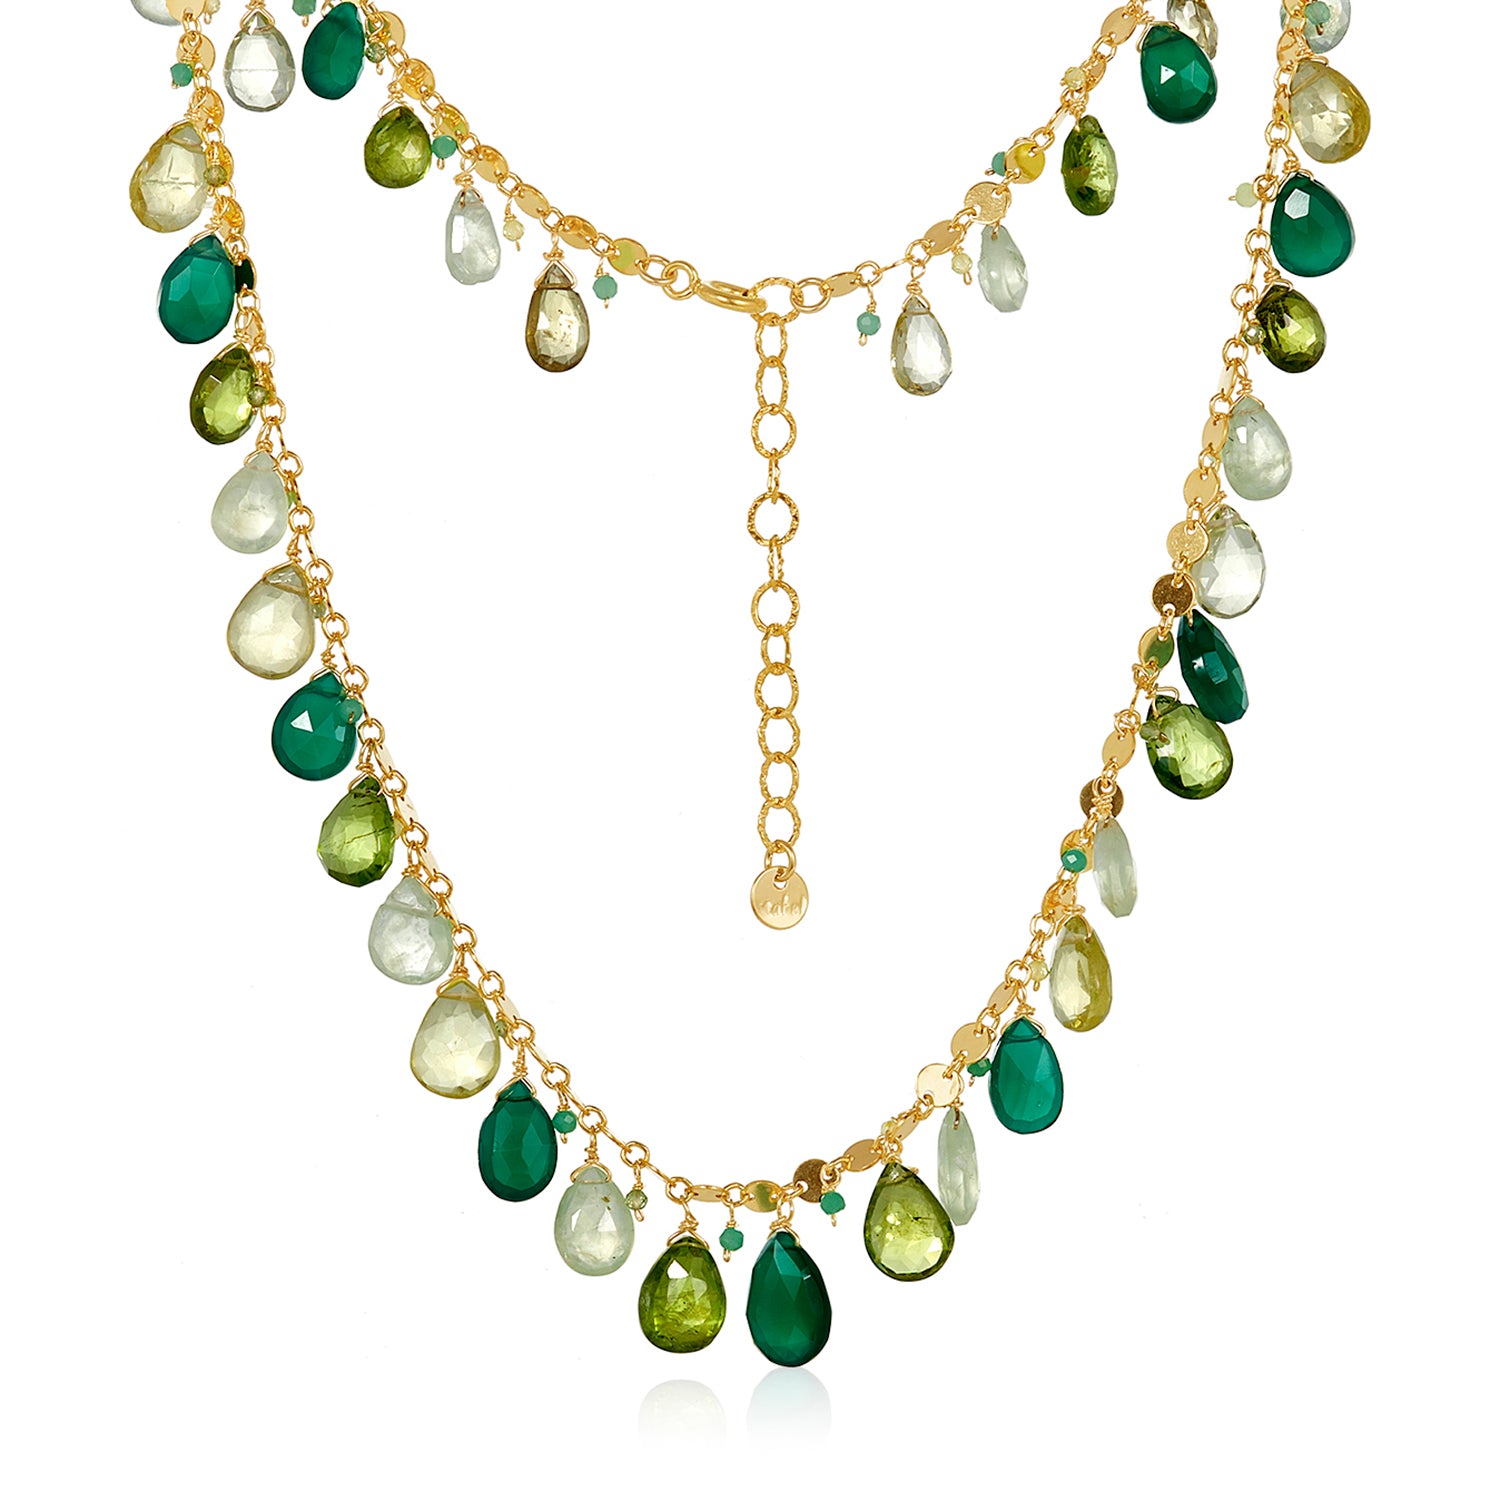 The Queen's Gambit Necklace - Green